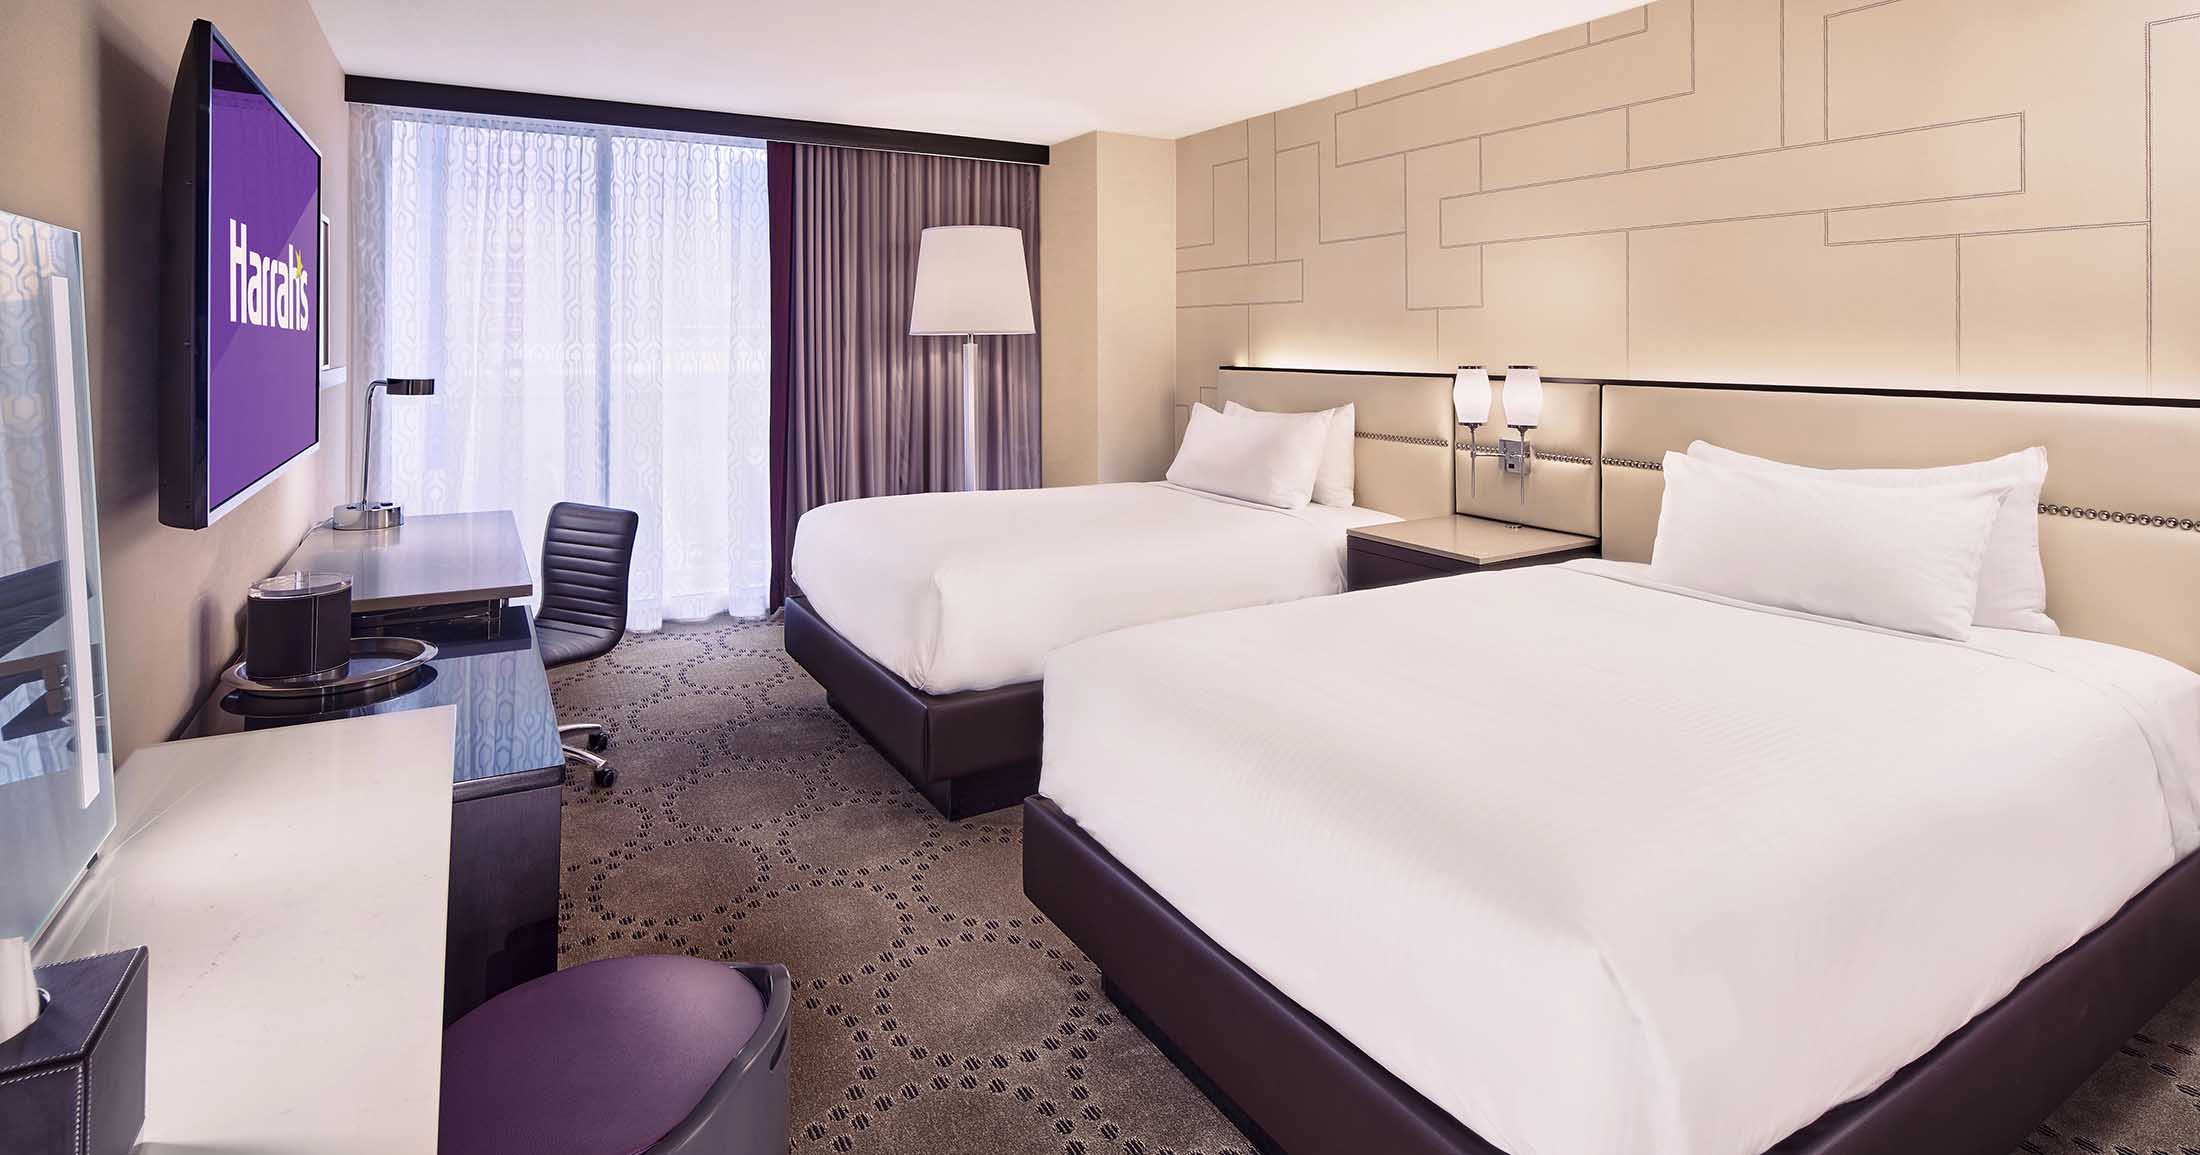 Harrah's room Las Vegas hotels